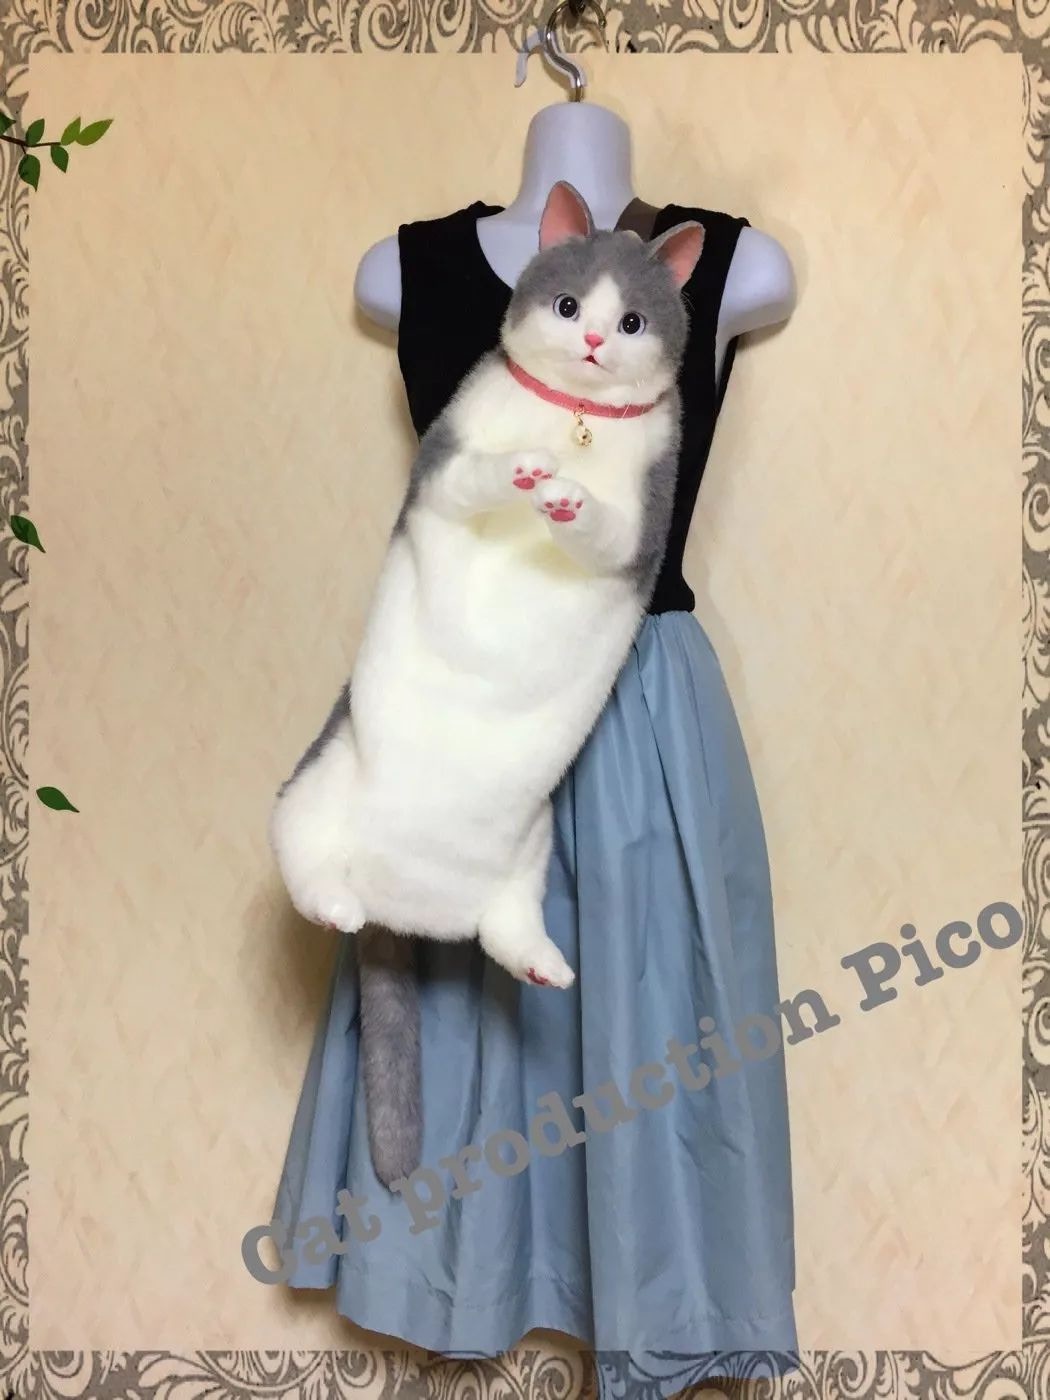 日本主婦手作「貓咪手袋」大受歡迎　網直呼好療癒：感覺有靈魂